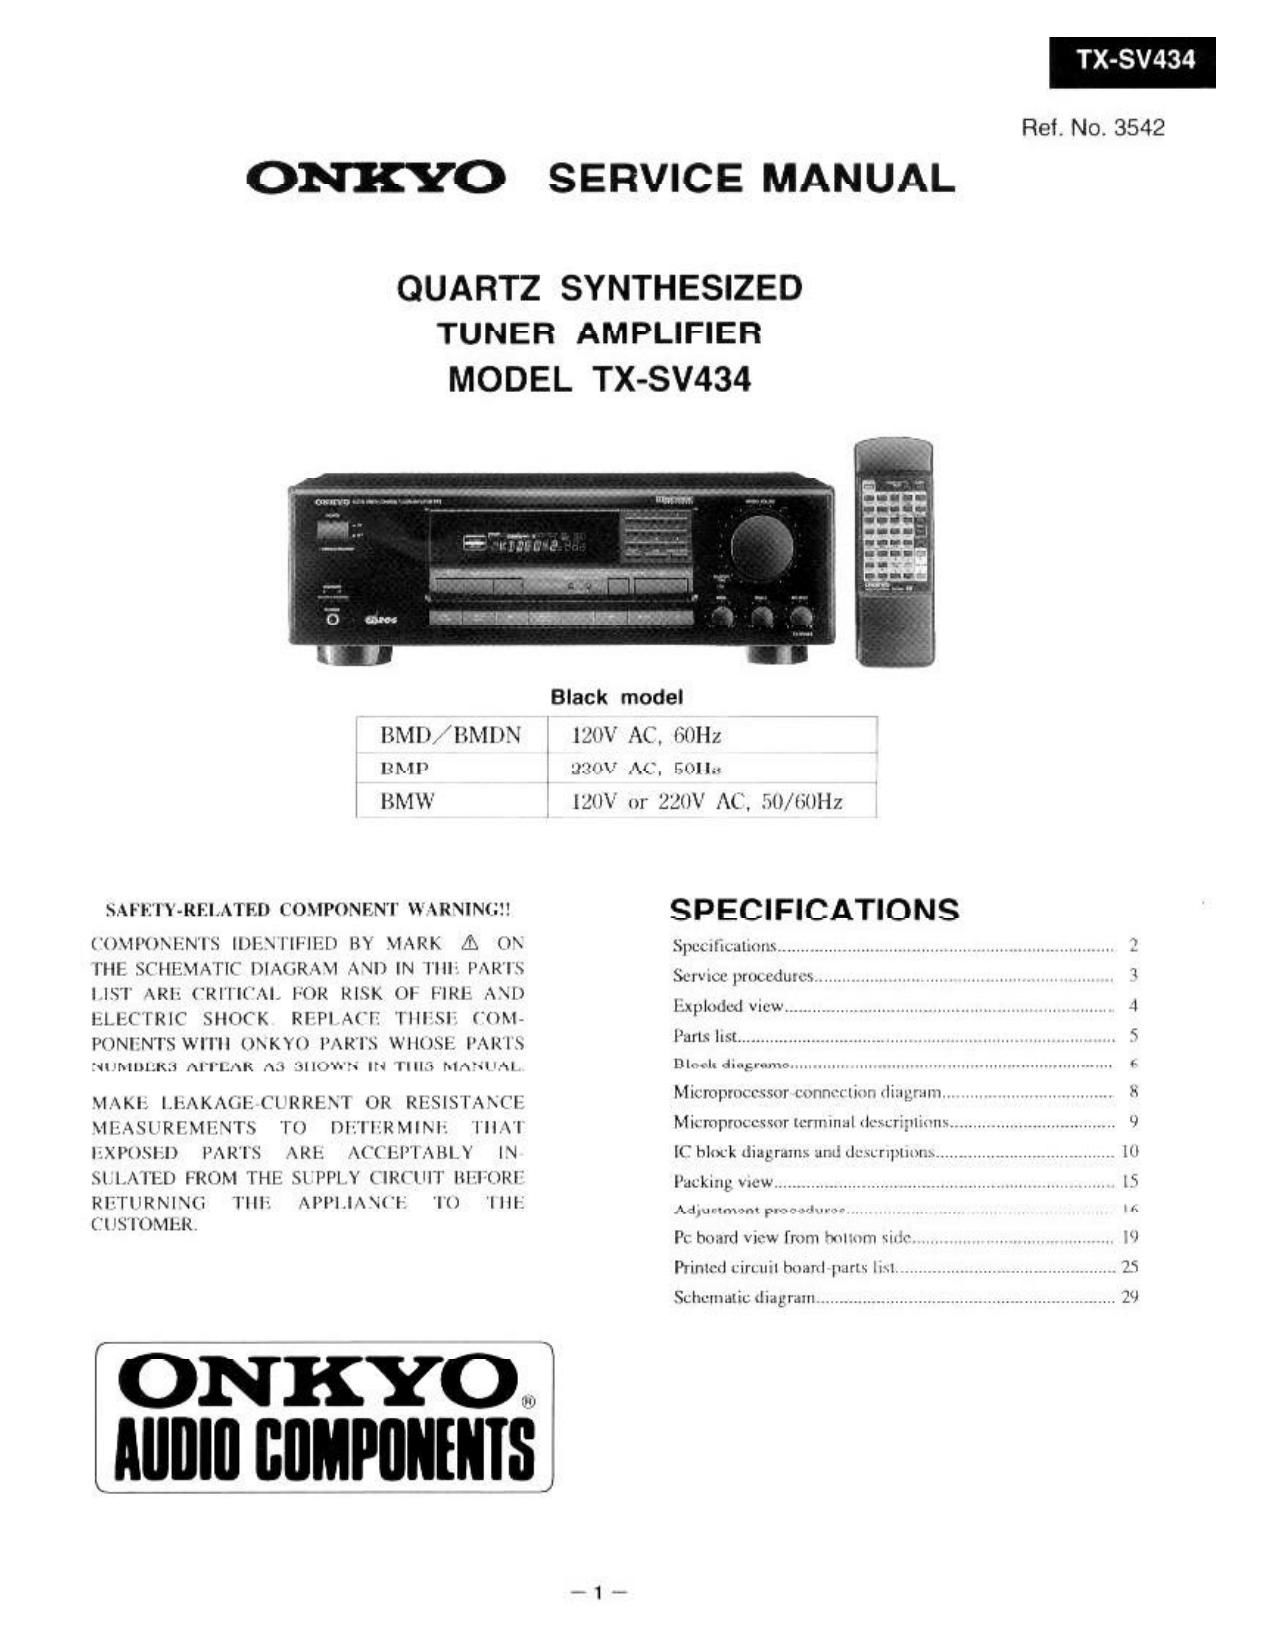 Onkyo TXSV 434 Service Manual